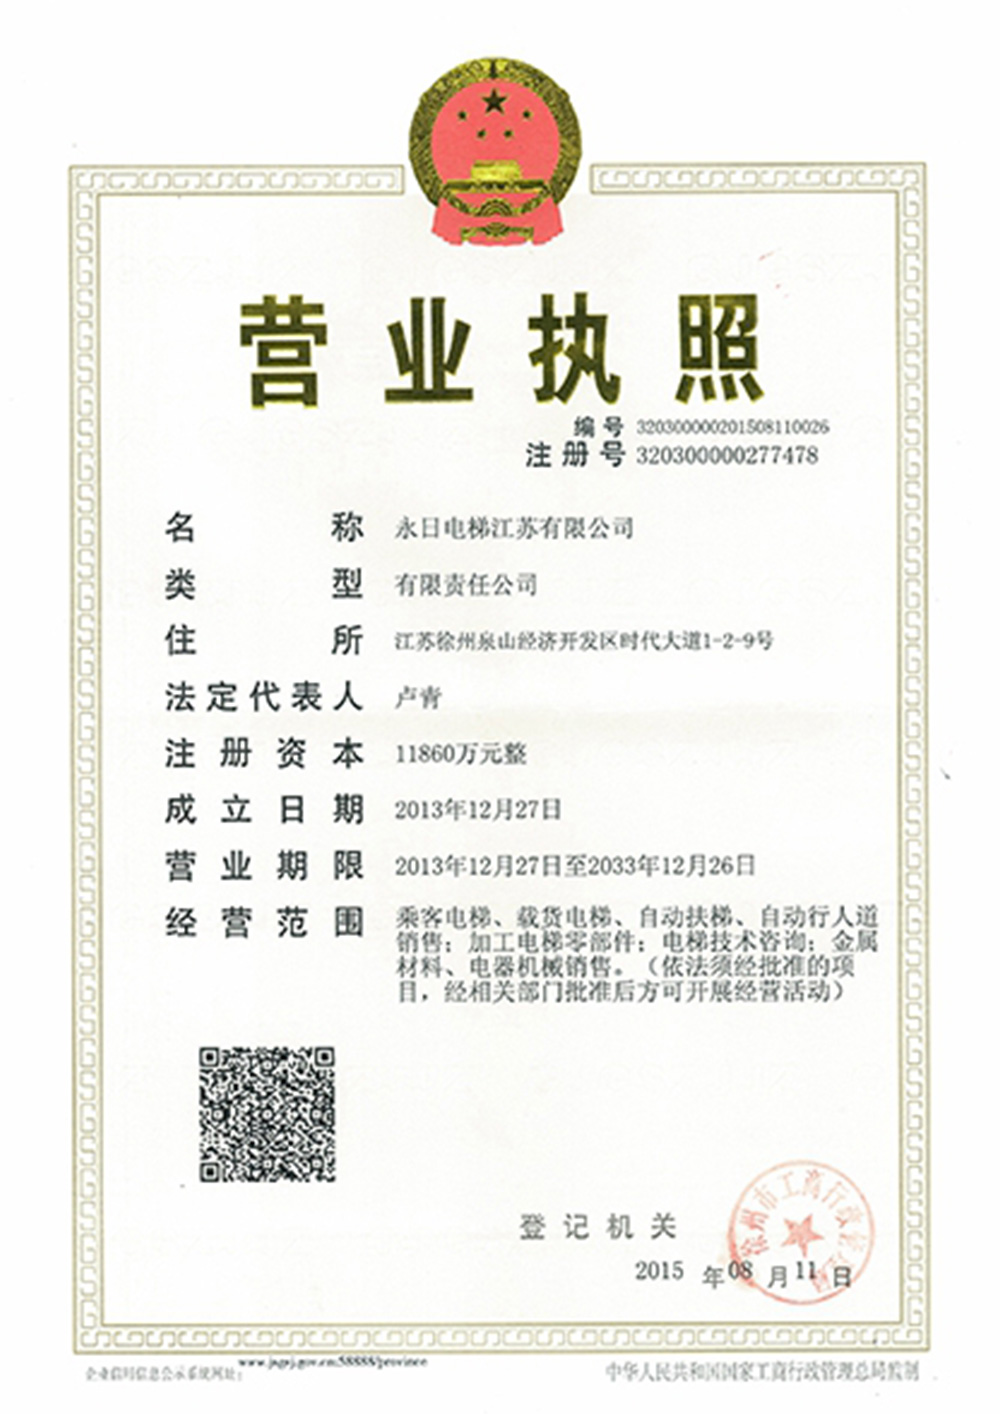 Business License (Jiangsu)